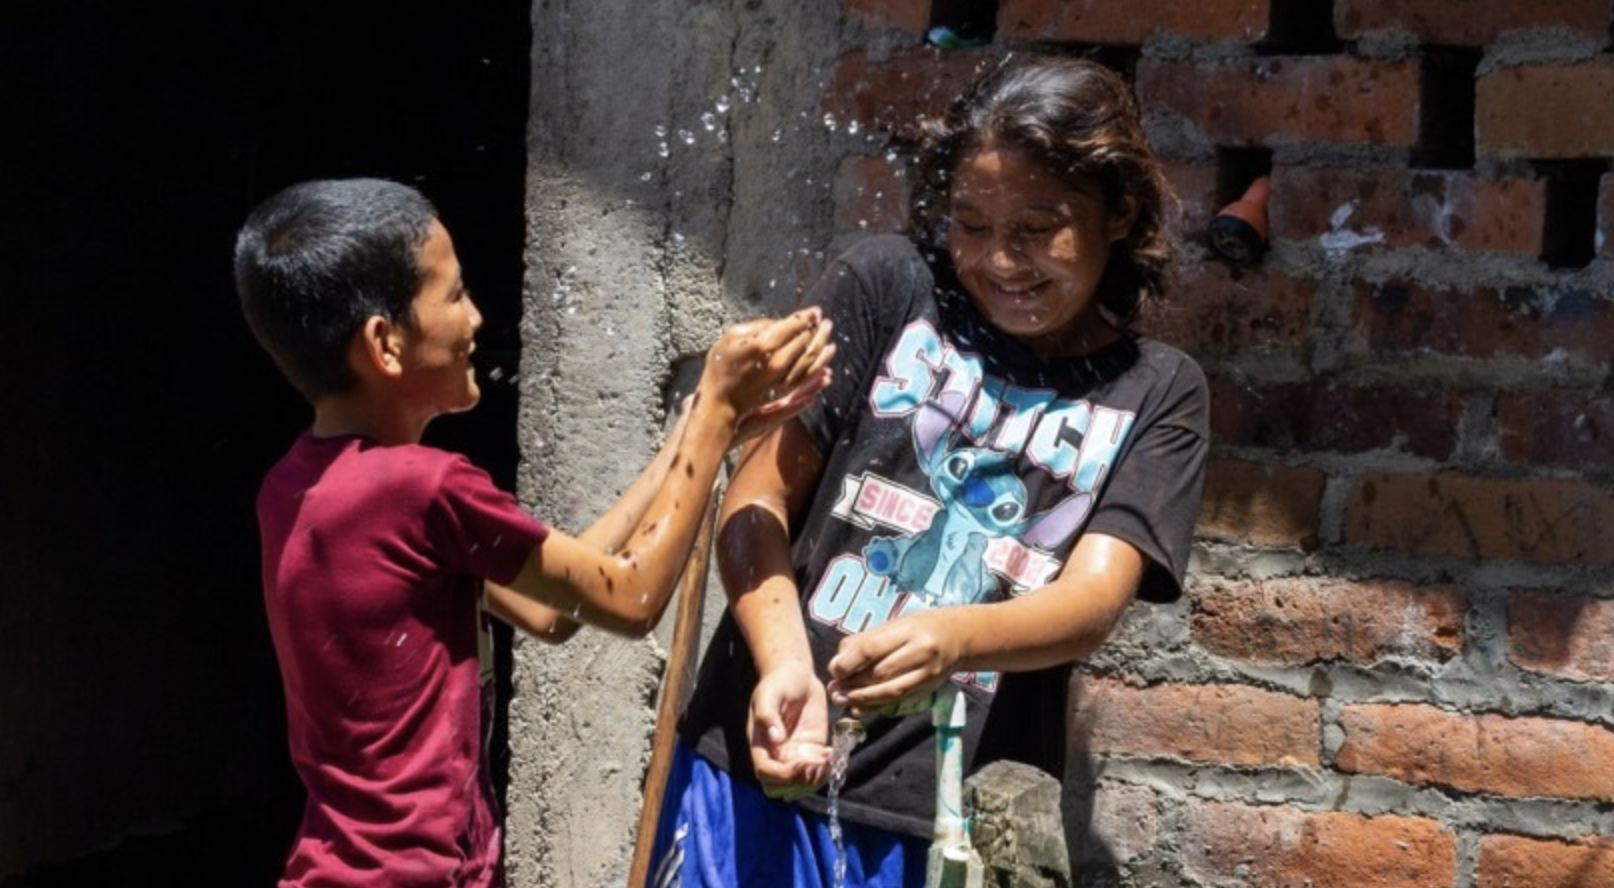 Mundo- Agua y saneamiento en zonas rurales de El Salvador: “Mis hermanos enfermaban por el agua” (iAgua)